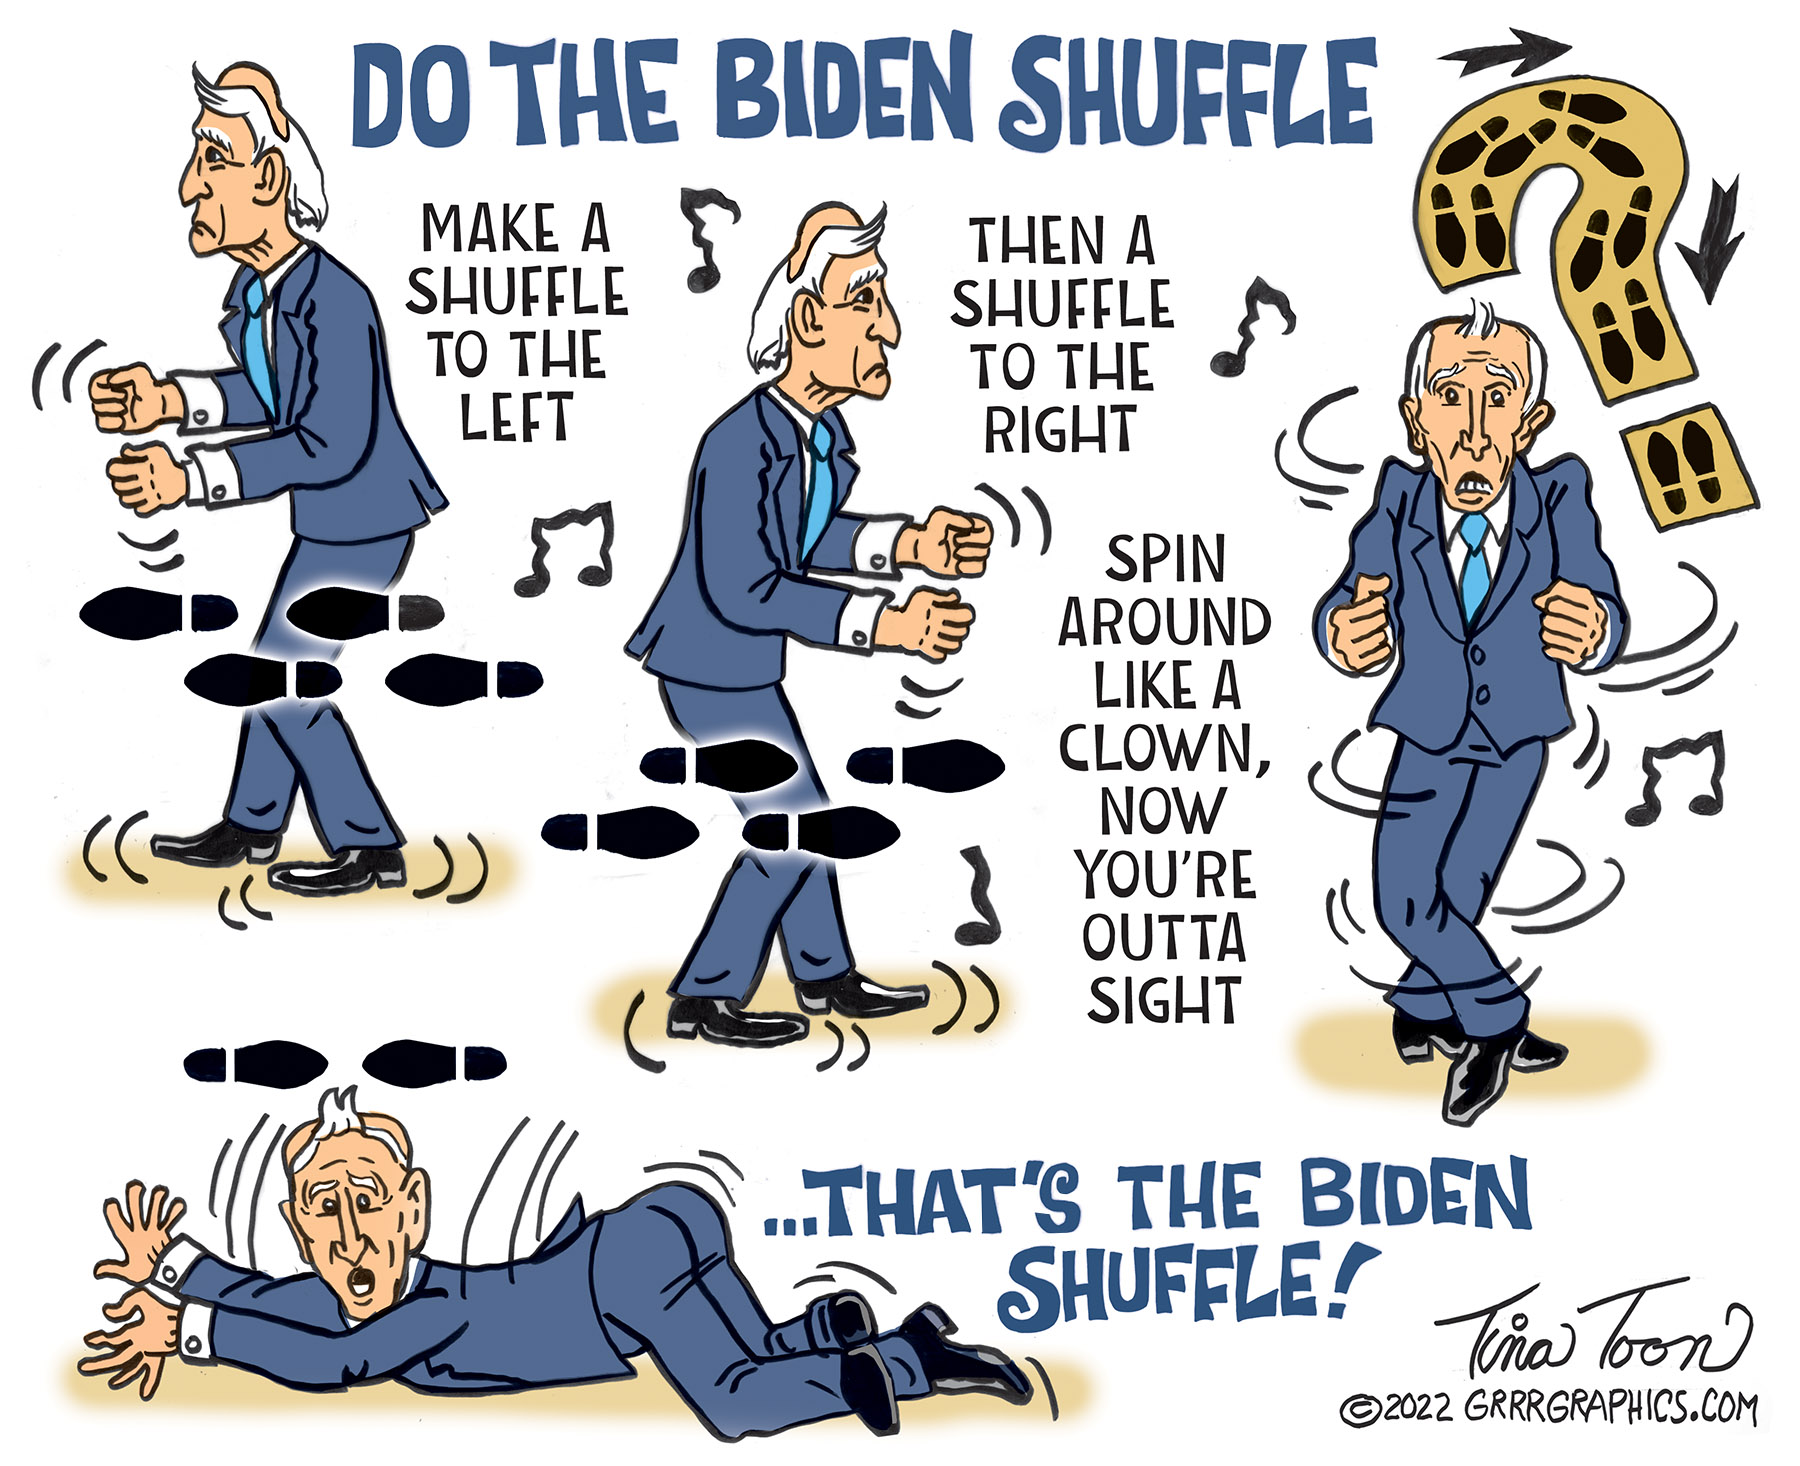 The Biden Shuffle